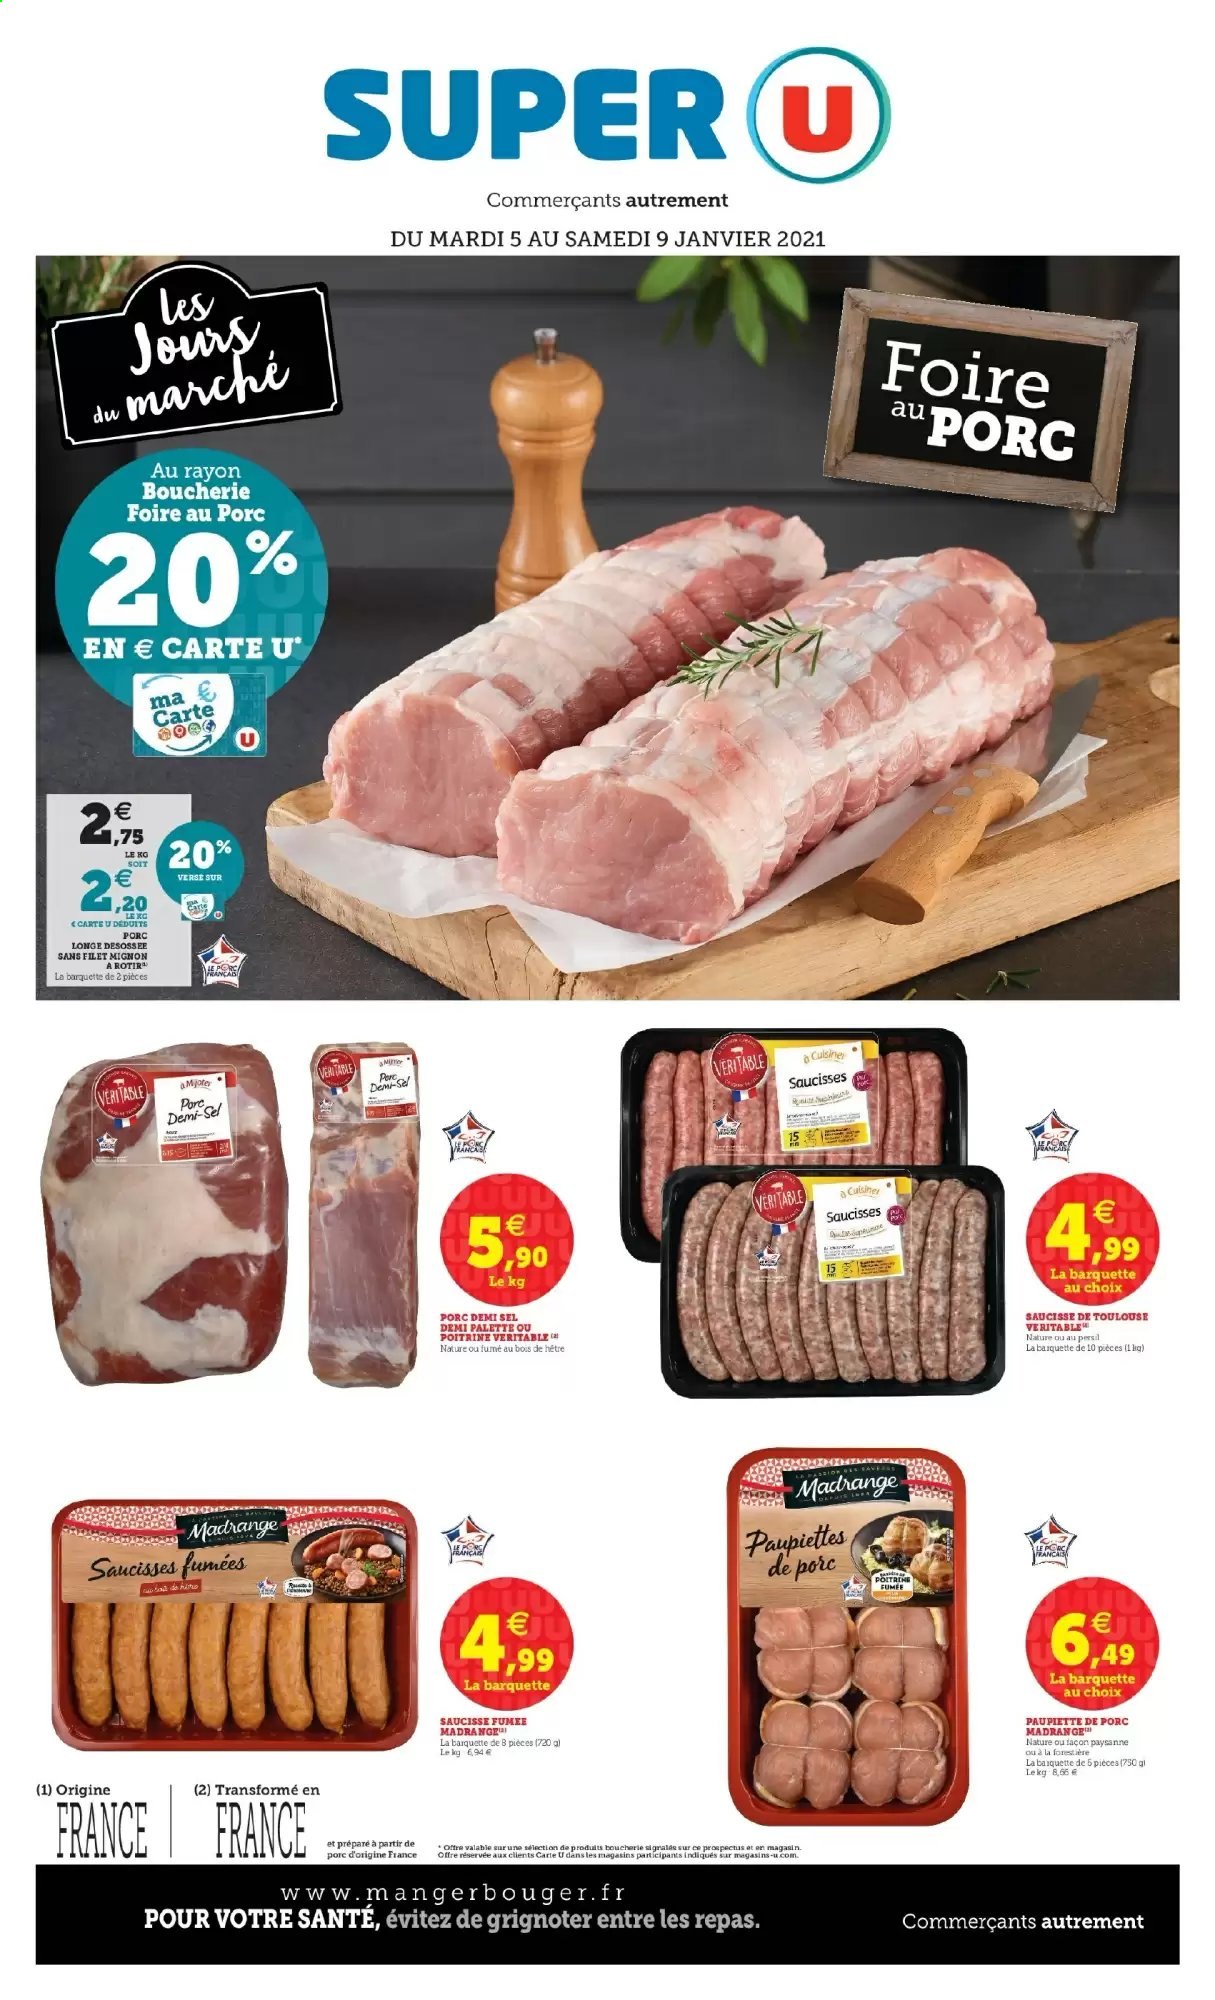 thumbnail - Catalogue SUPER U - 05/01/2021 - 09/01/2021 - Produits soldés - filet mignon, viande de porc, paupiette, saucisse, Persil, Palette. Page 1.